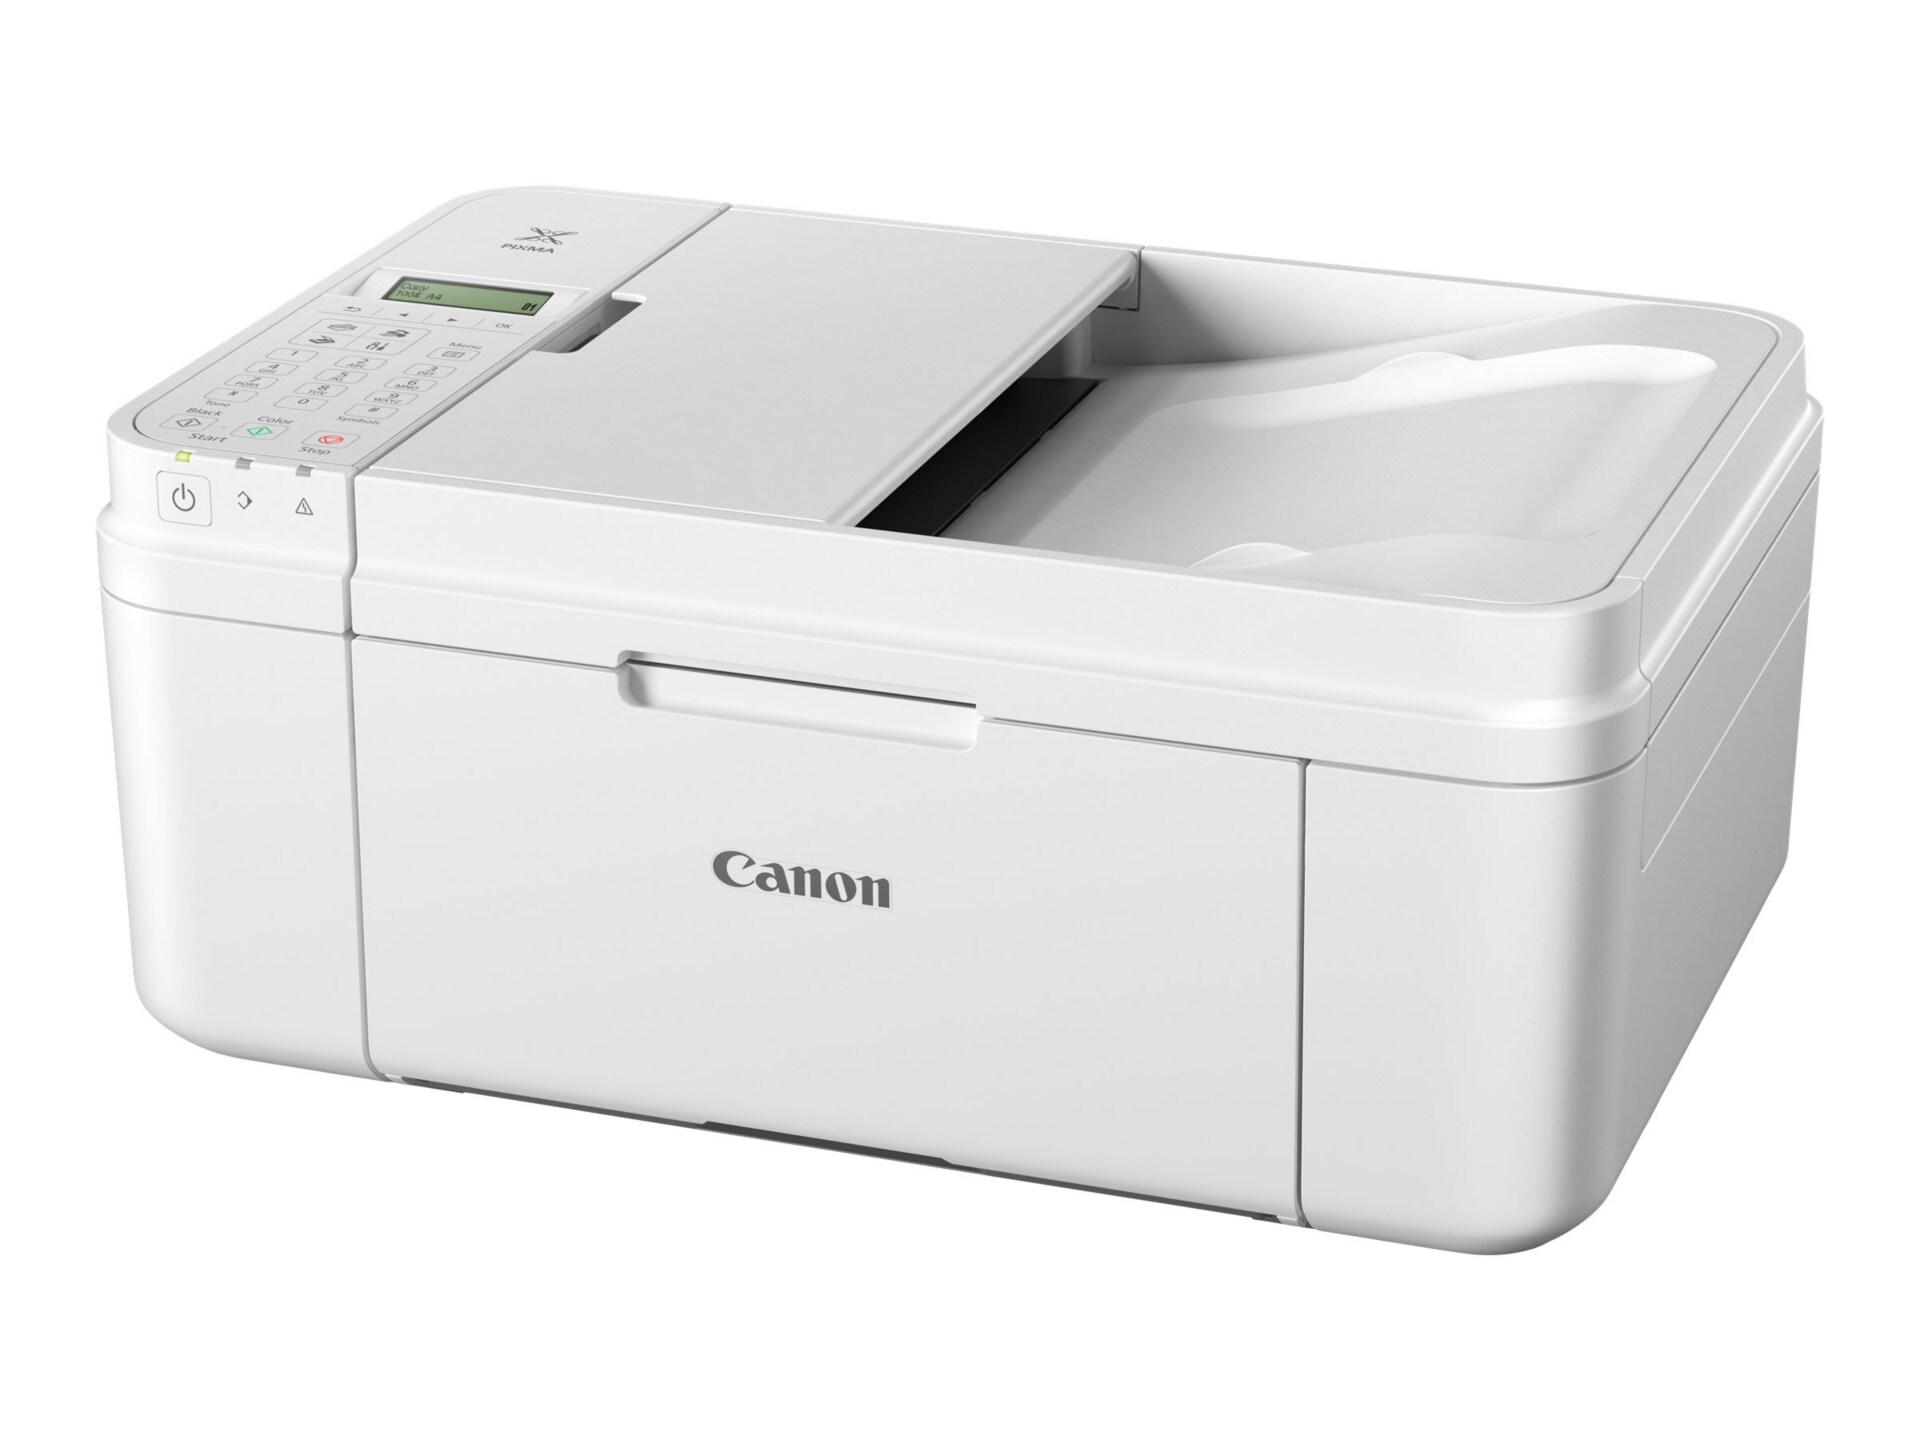 Canon mx492 printer software download